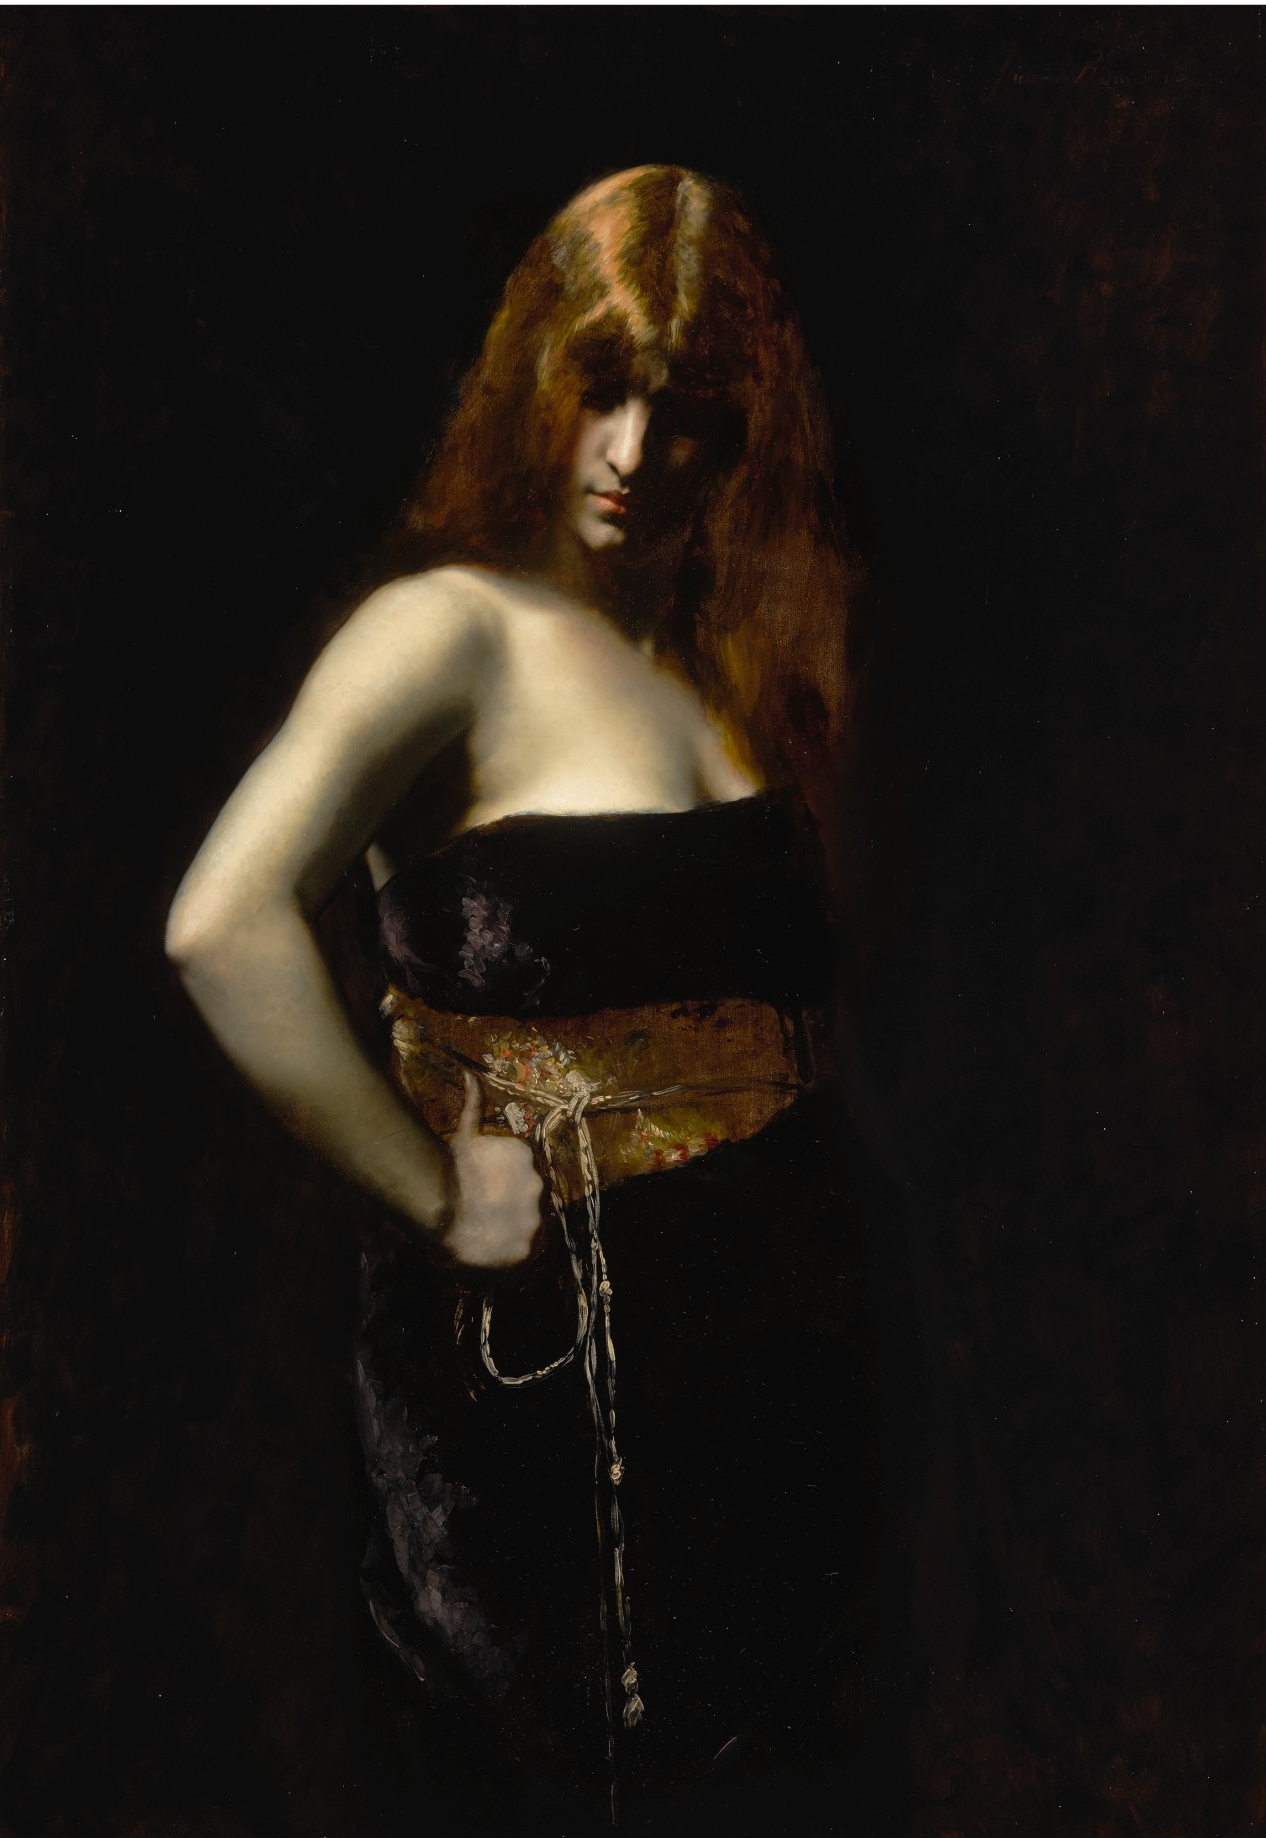 Retrato de mujer con el pelo rojo by Juana Romani - Segunda mitad del siglo XIX - 116,5 x 80 cm Colección privada